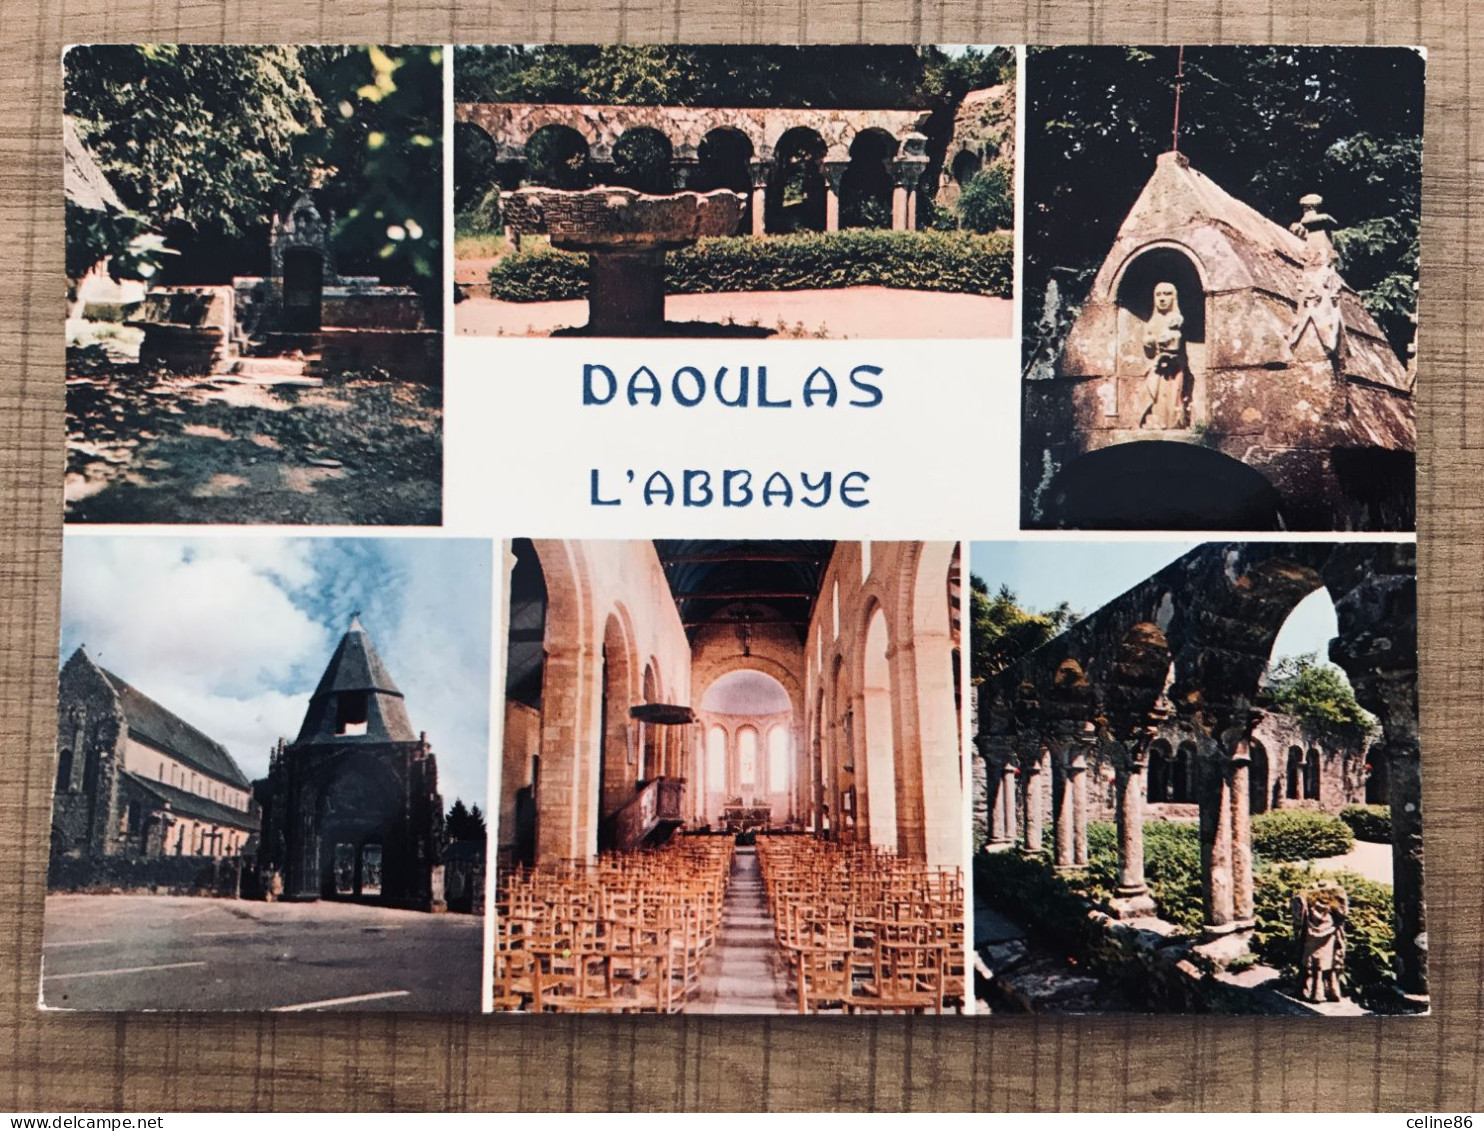  DAOULAS L'Abbaye, Cloitre Du XIIè S  - Daoulas